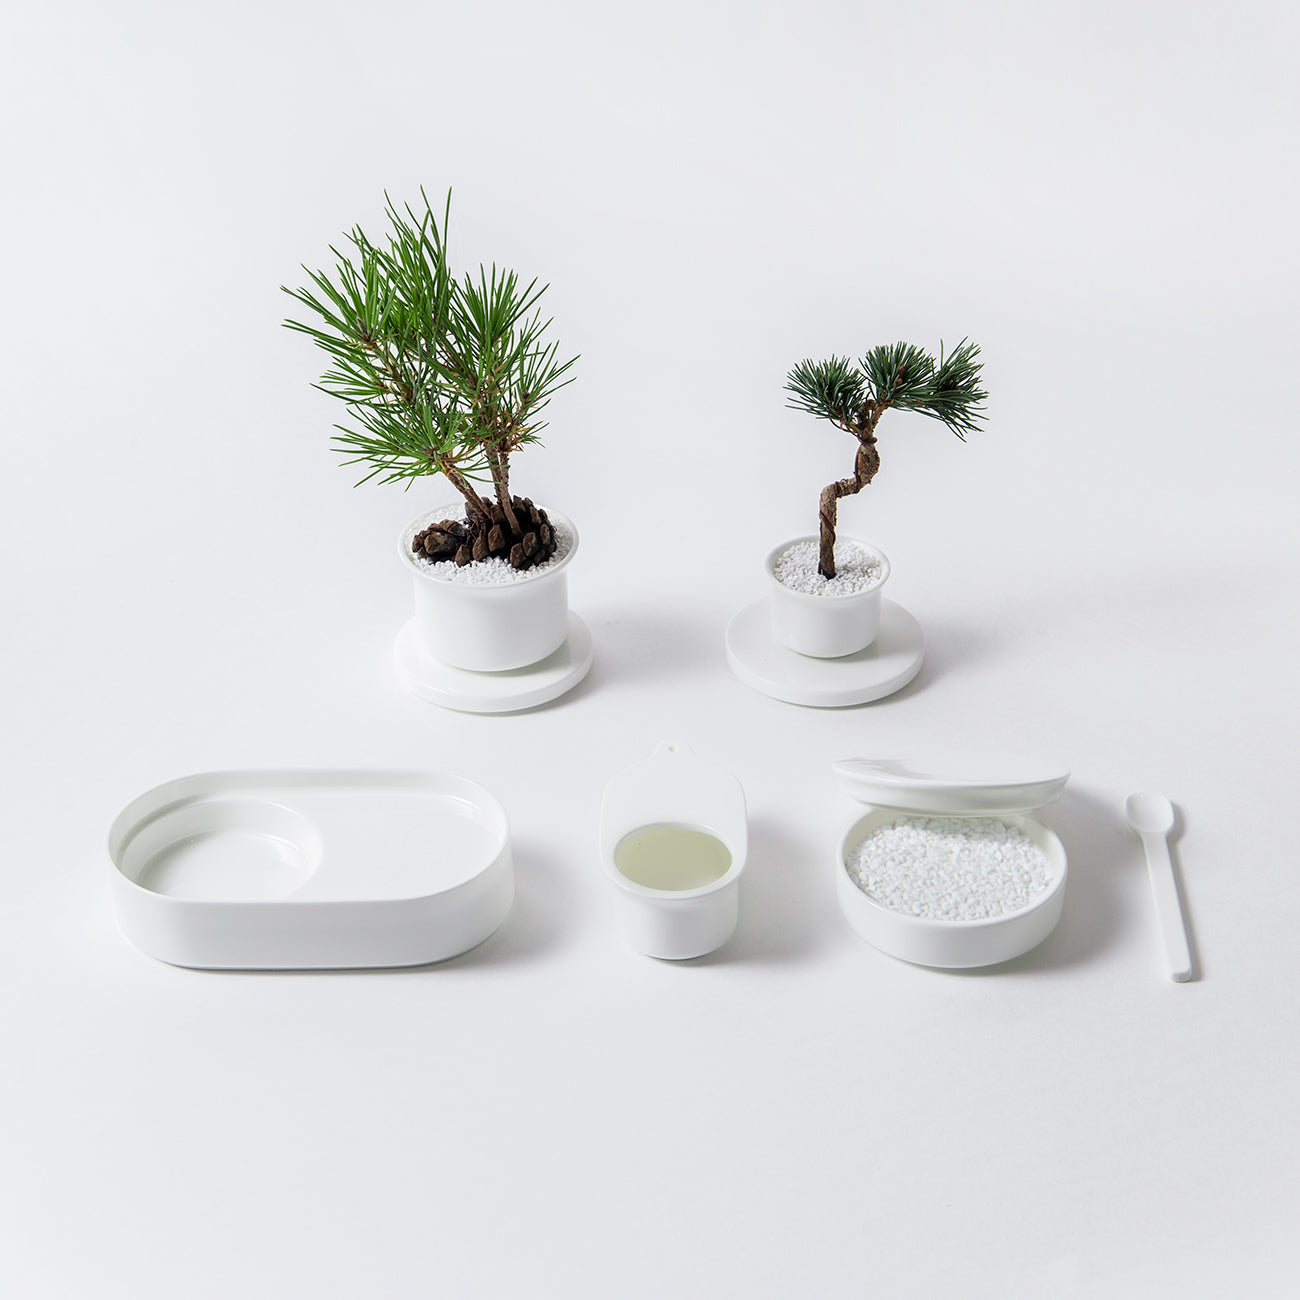 【復興支援商品】Table Bonsai